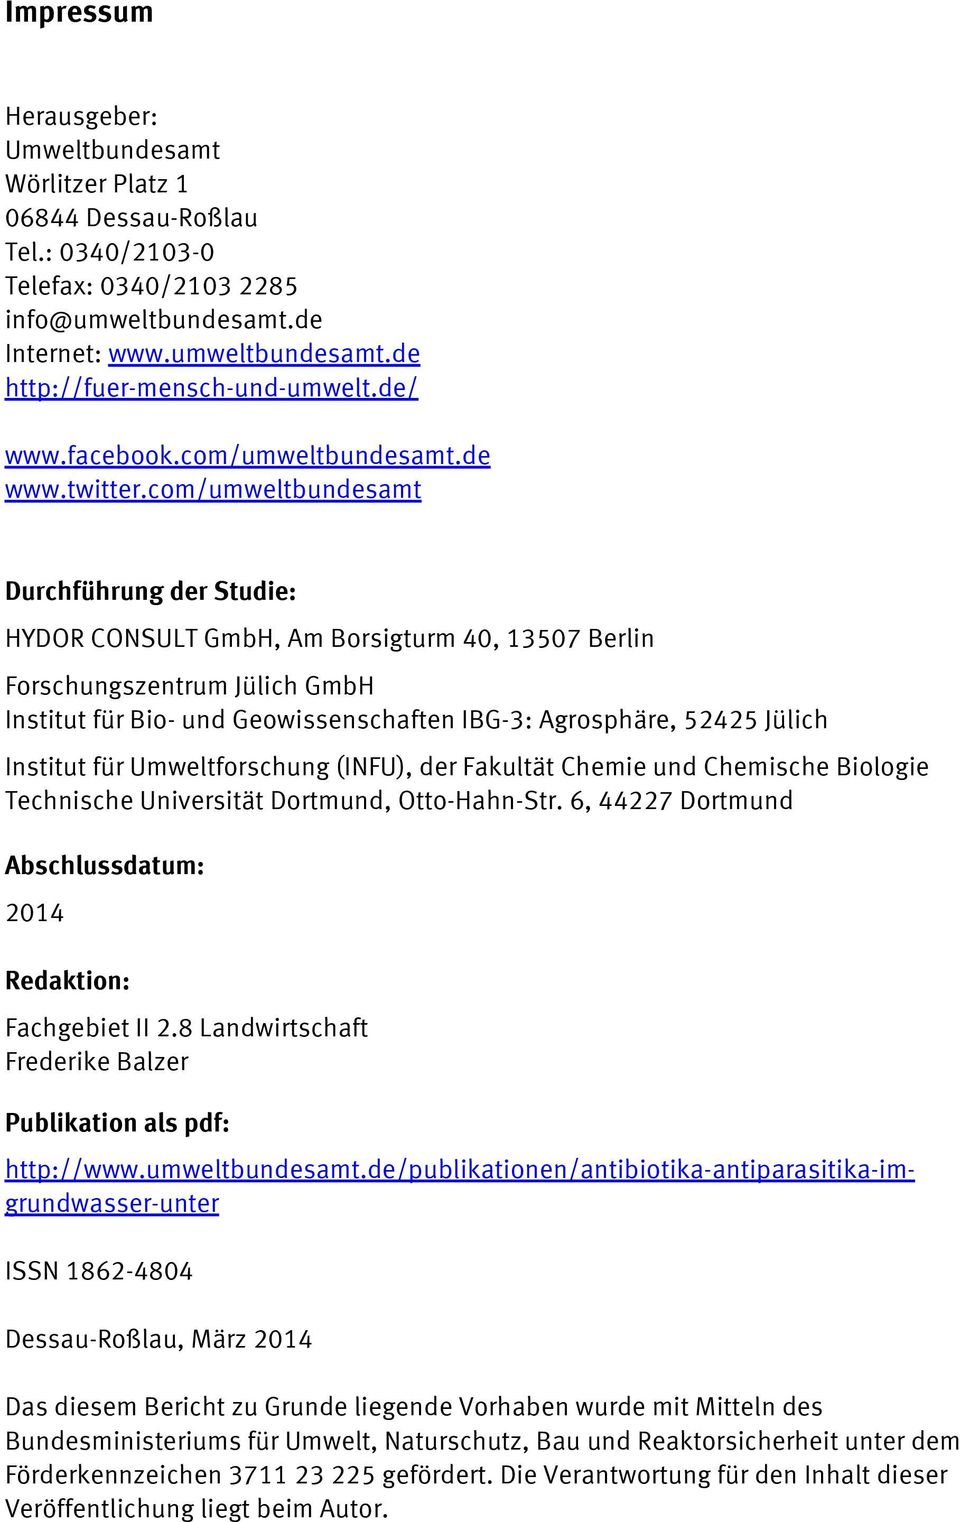 com/umweltbundesamt Durchführung der Studie: HYDOR CONSULT GmbH, Am Borsigturm 40, 13507 Berlin Forschungszentrum Jülich GmbH Institut für Bio- und Geowissenschaften IBG-3: Agrosphäre, 52425 Jülich